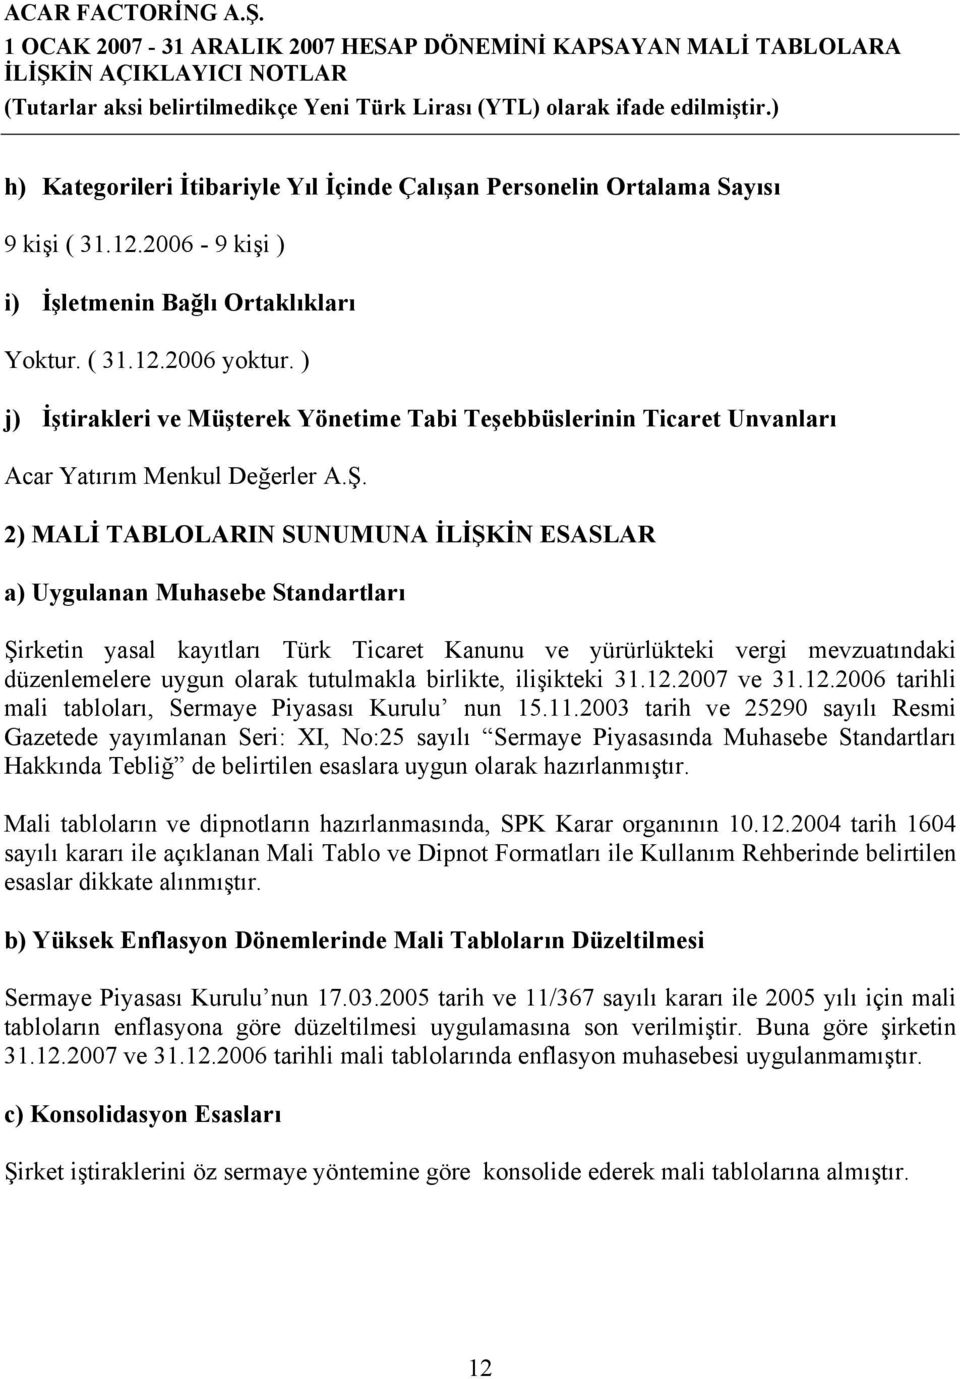 2) MALİ TABLOLARIN SUNUMUNA İLİŞKİN ESASLAR a) Uygulanan Muhasebe Standartları Şirketin yasal kayıtları Türk Ticaret Kanunu ve yürürlükteki vergi mevzuatındaki düzenlemelere uygun olarak tutulmakla